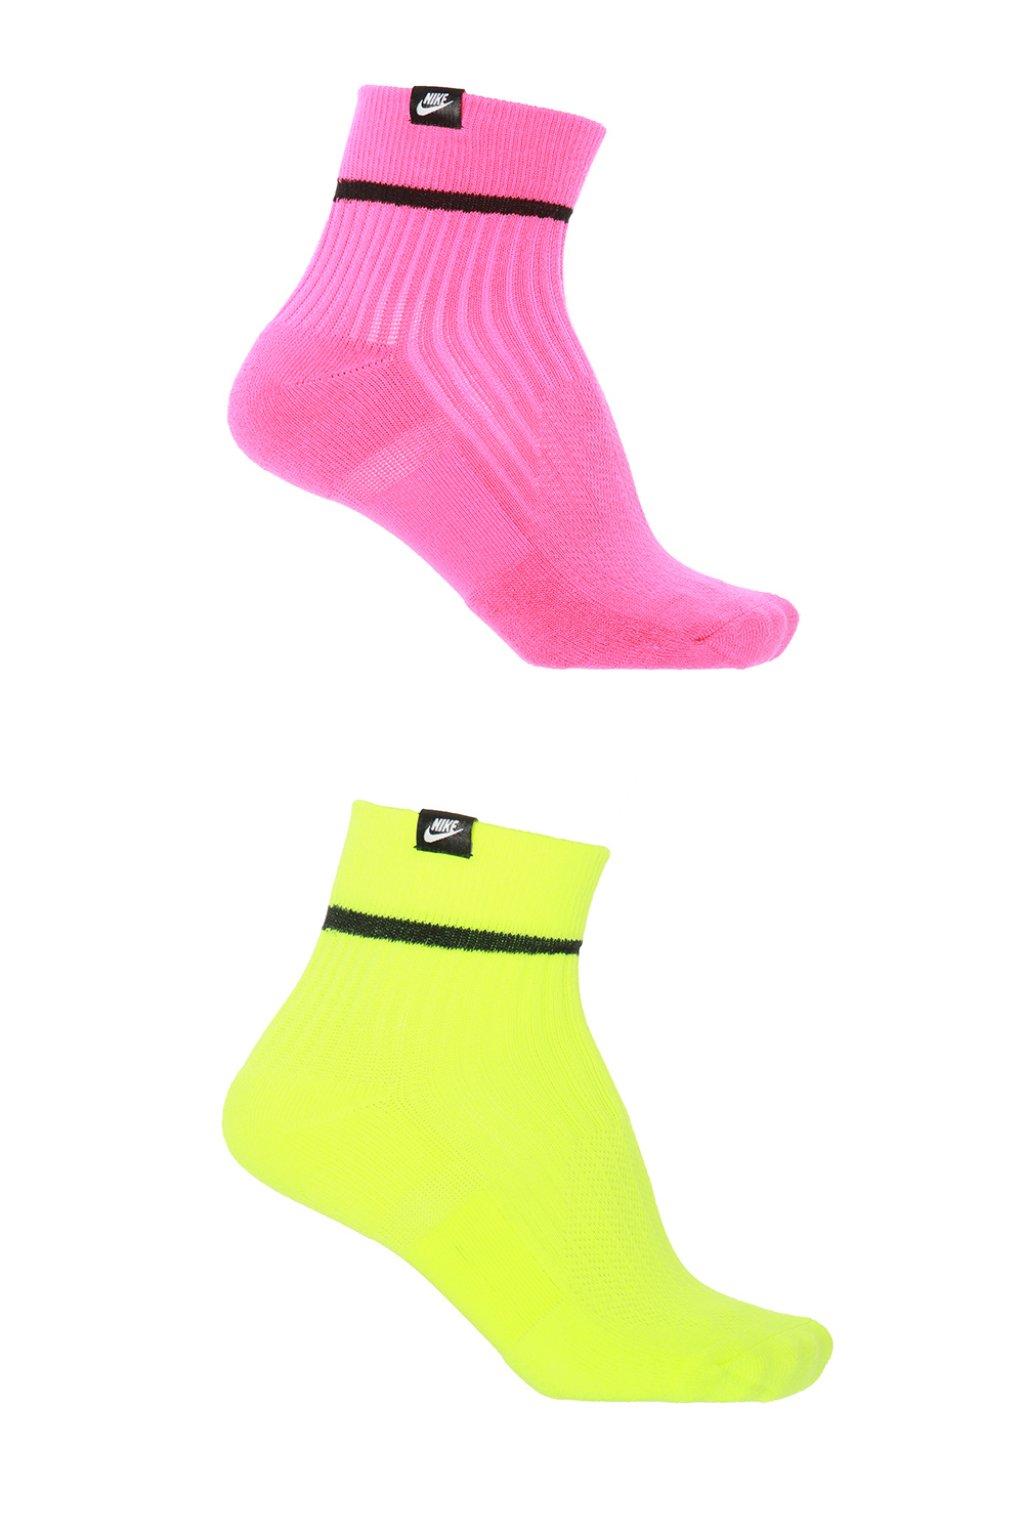 Nike Hi-vis Neon Socks for Men | Lyst